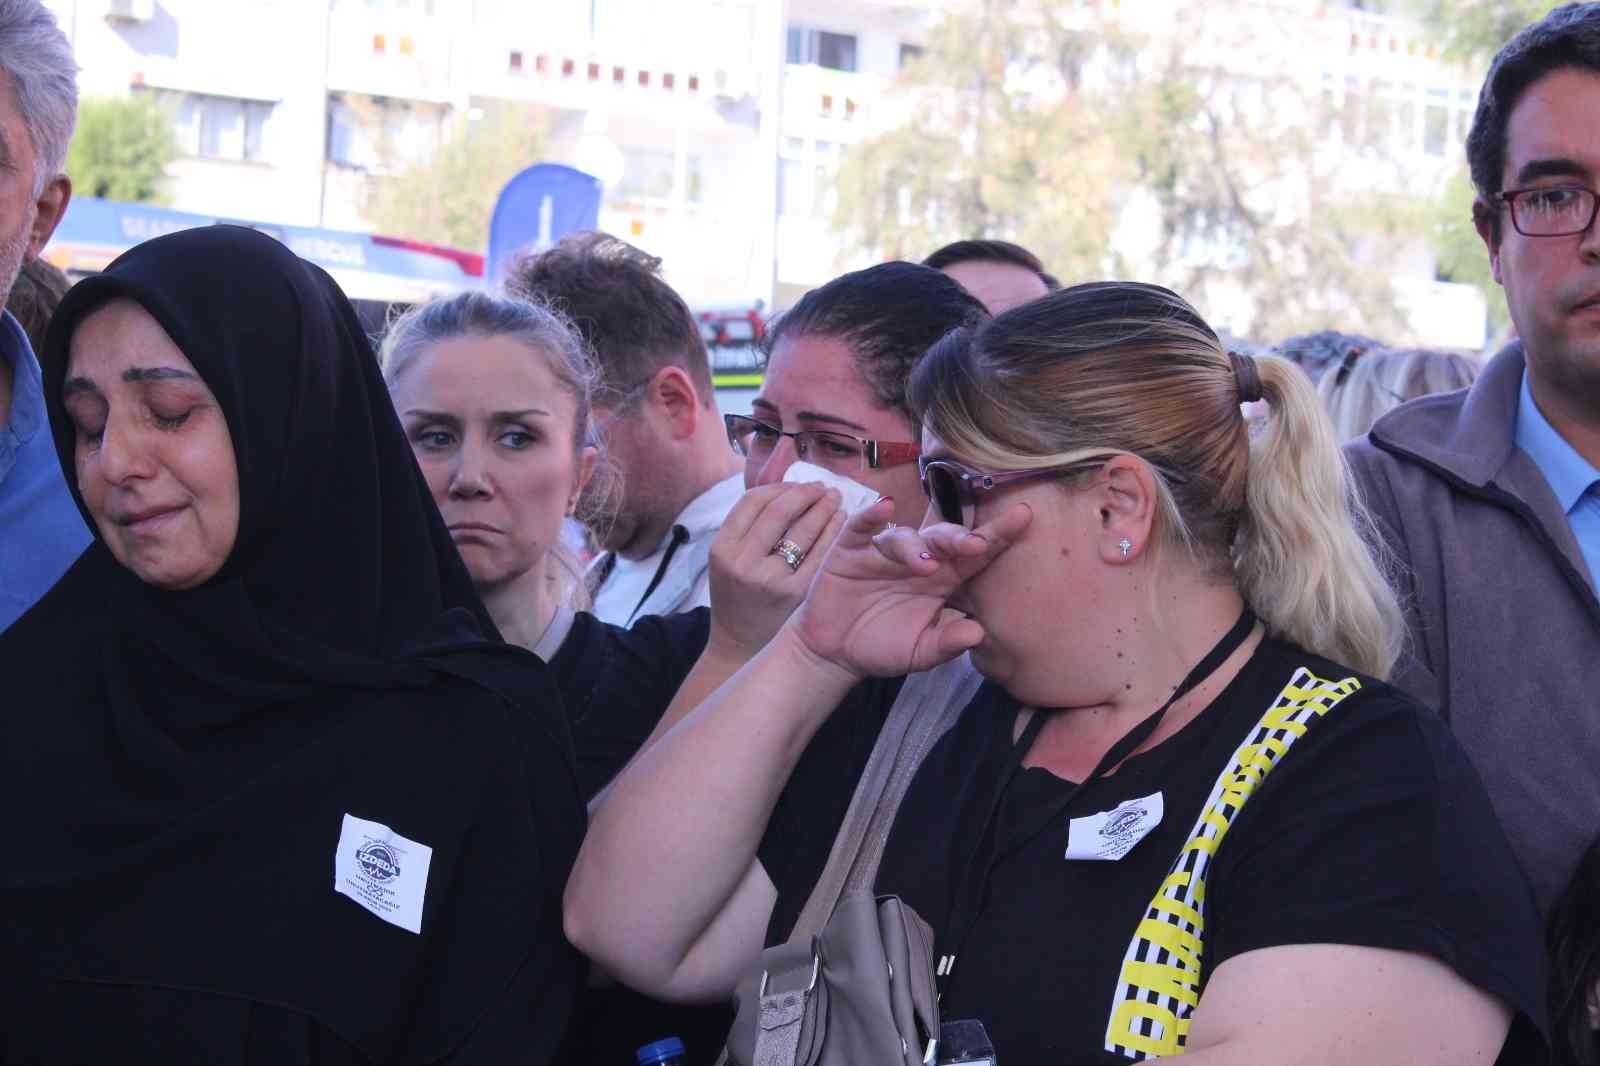 İzmir depreminde hayatlarını kaybedenler gözyaşları ile anıldı